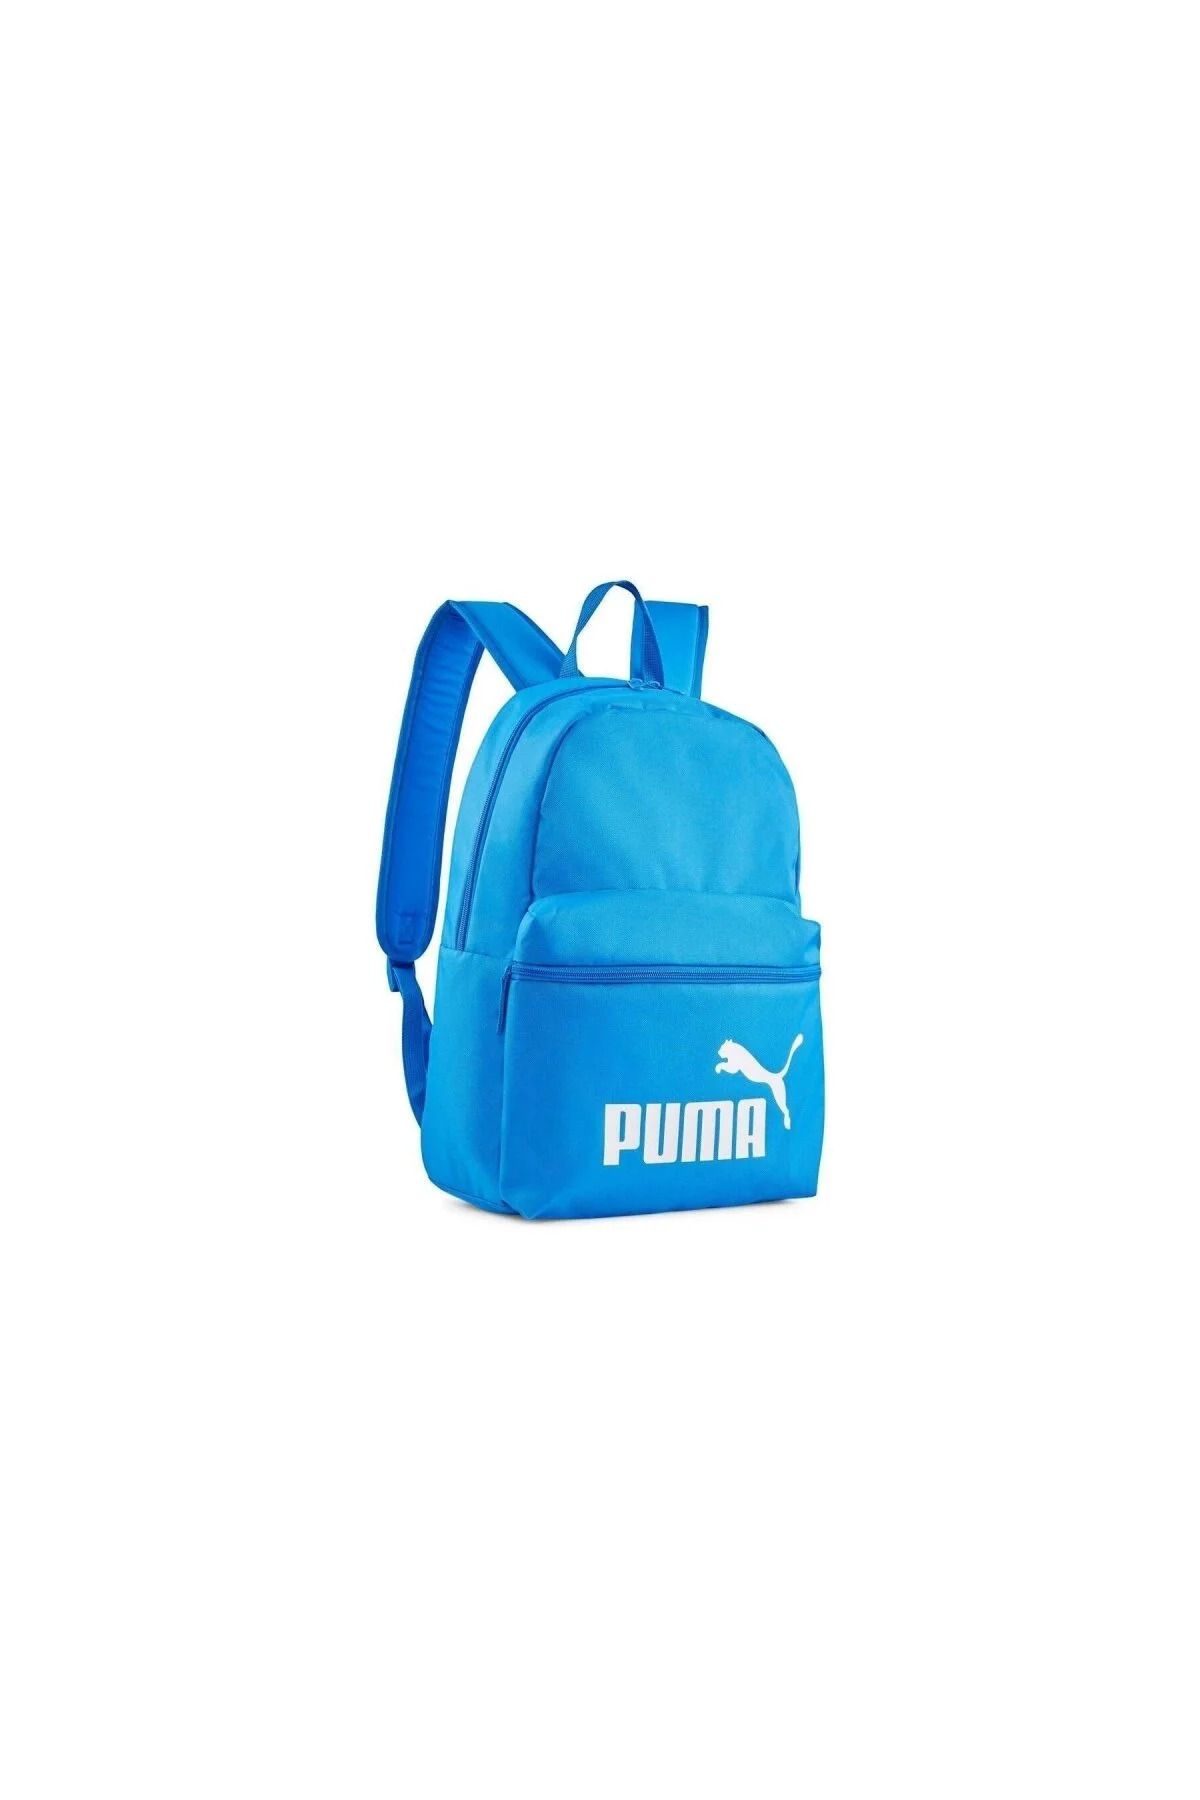 Puma Phase Backpack07994314